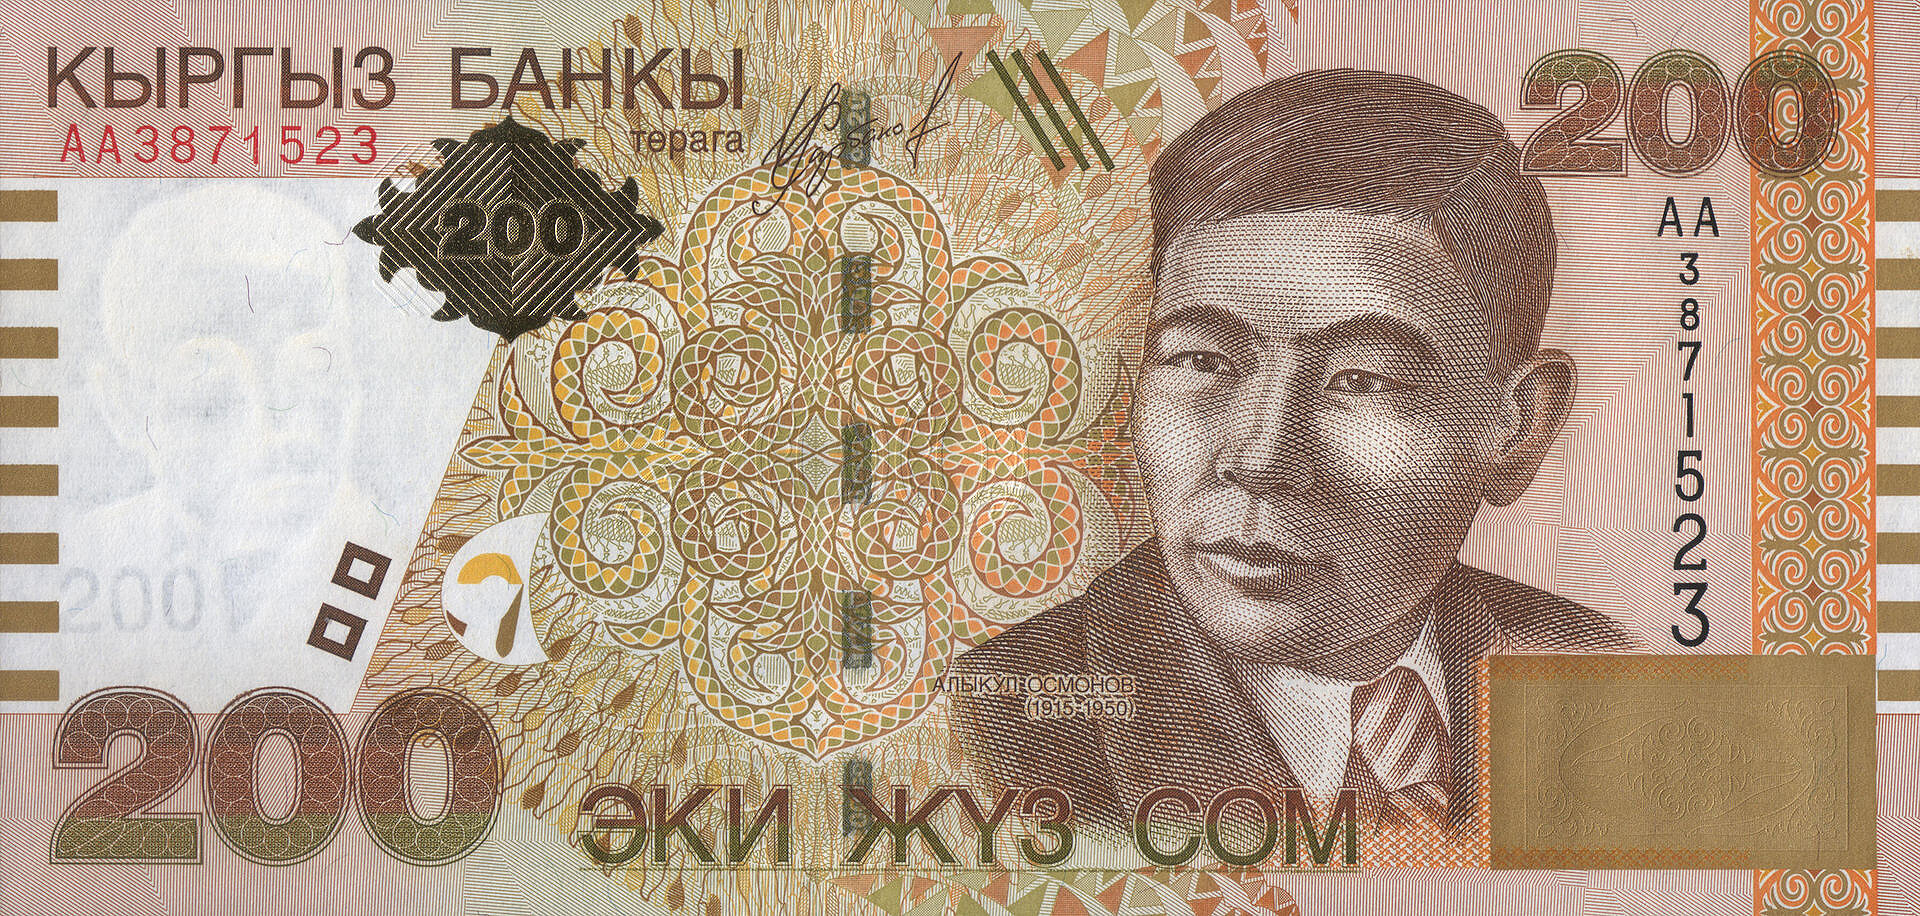 Киргизия — сом . Национальная валюта Киргизии — сом. 1 сом равен 100 тыйынам, правда в стране они практически не используются.